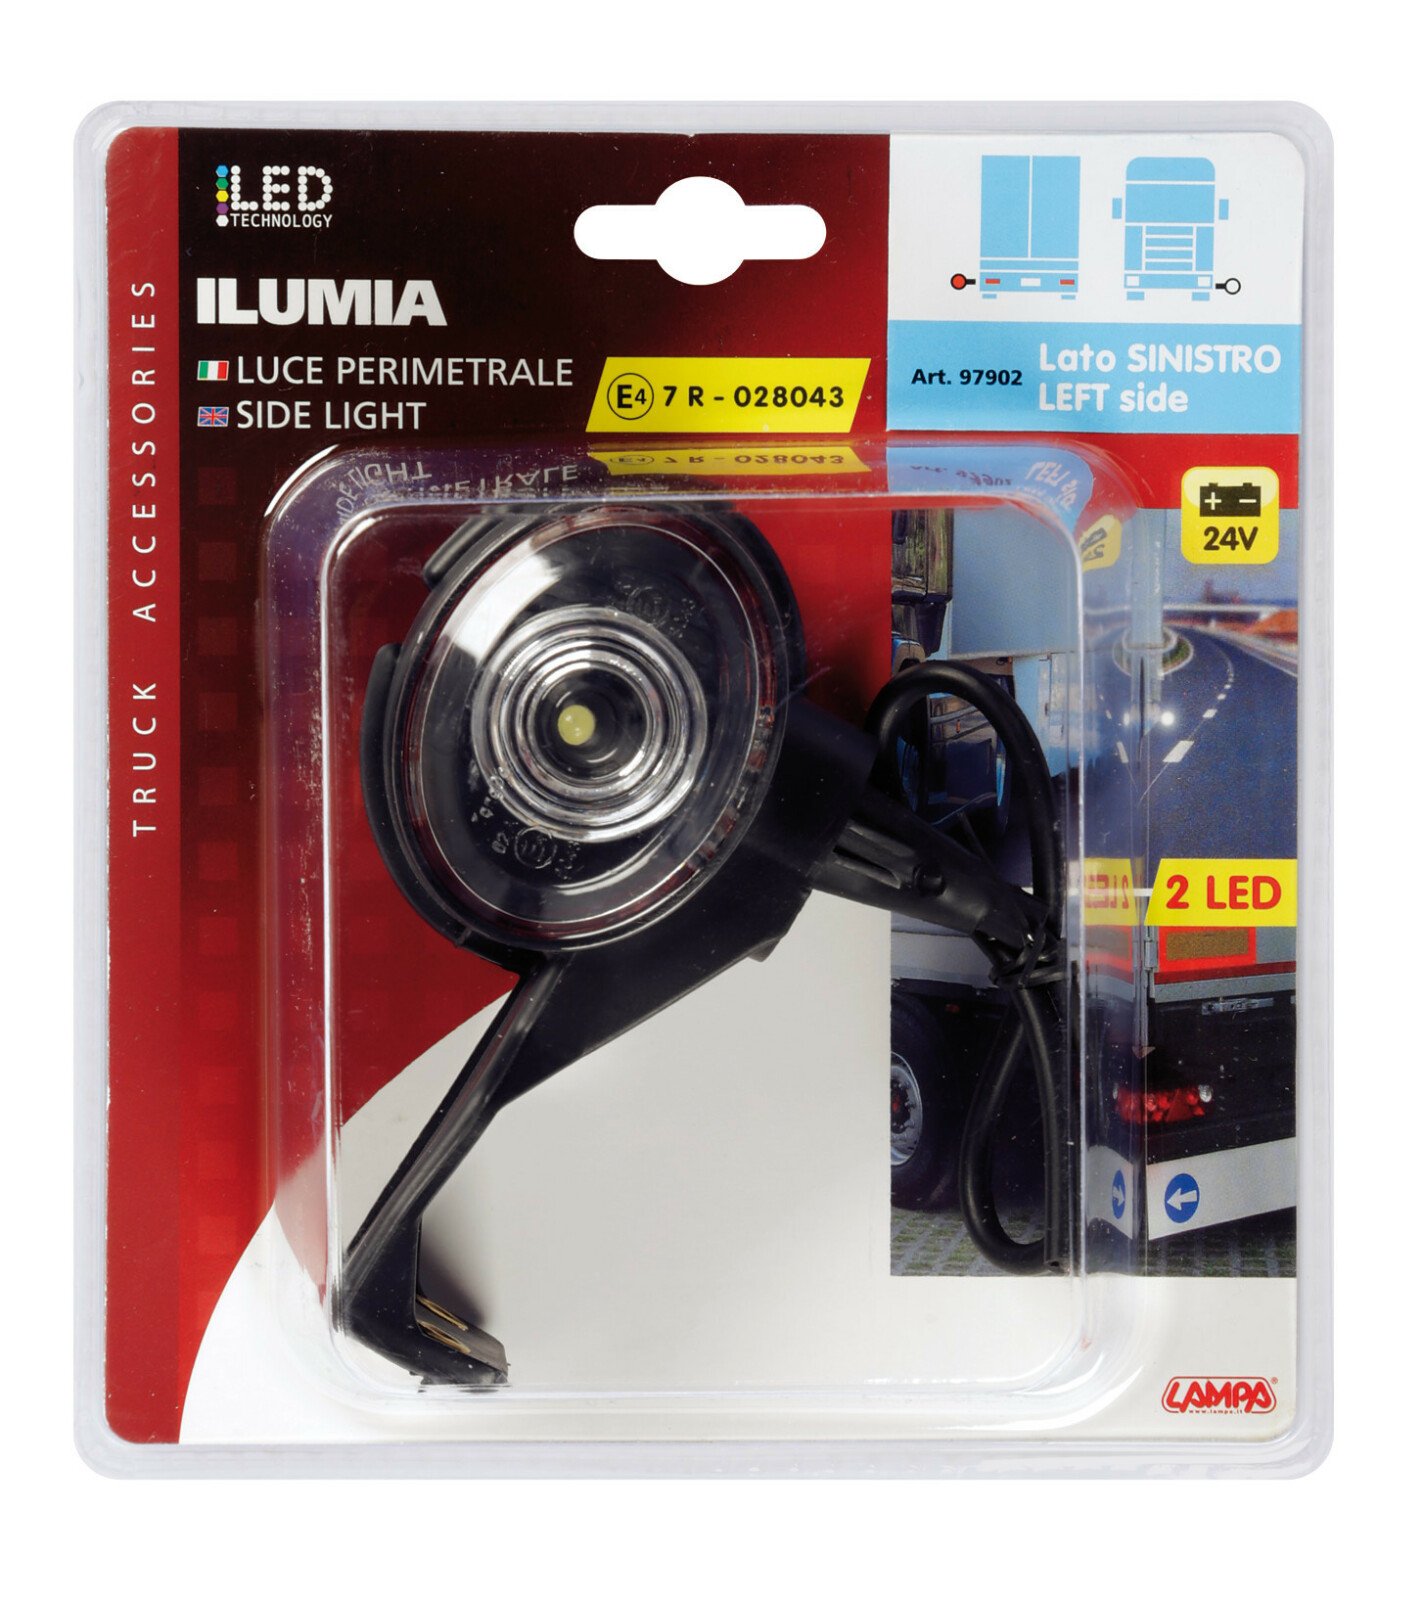 Ilumia, side light, 2 Led, 24V - L fit - Left thumb